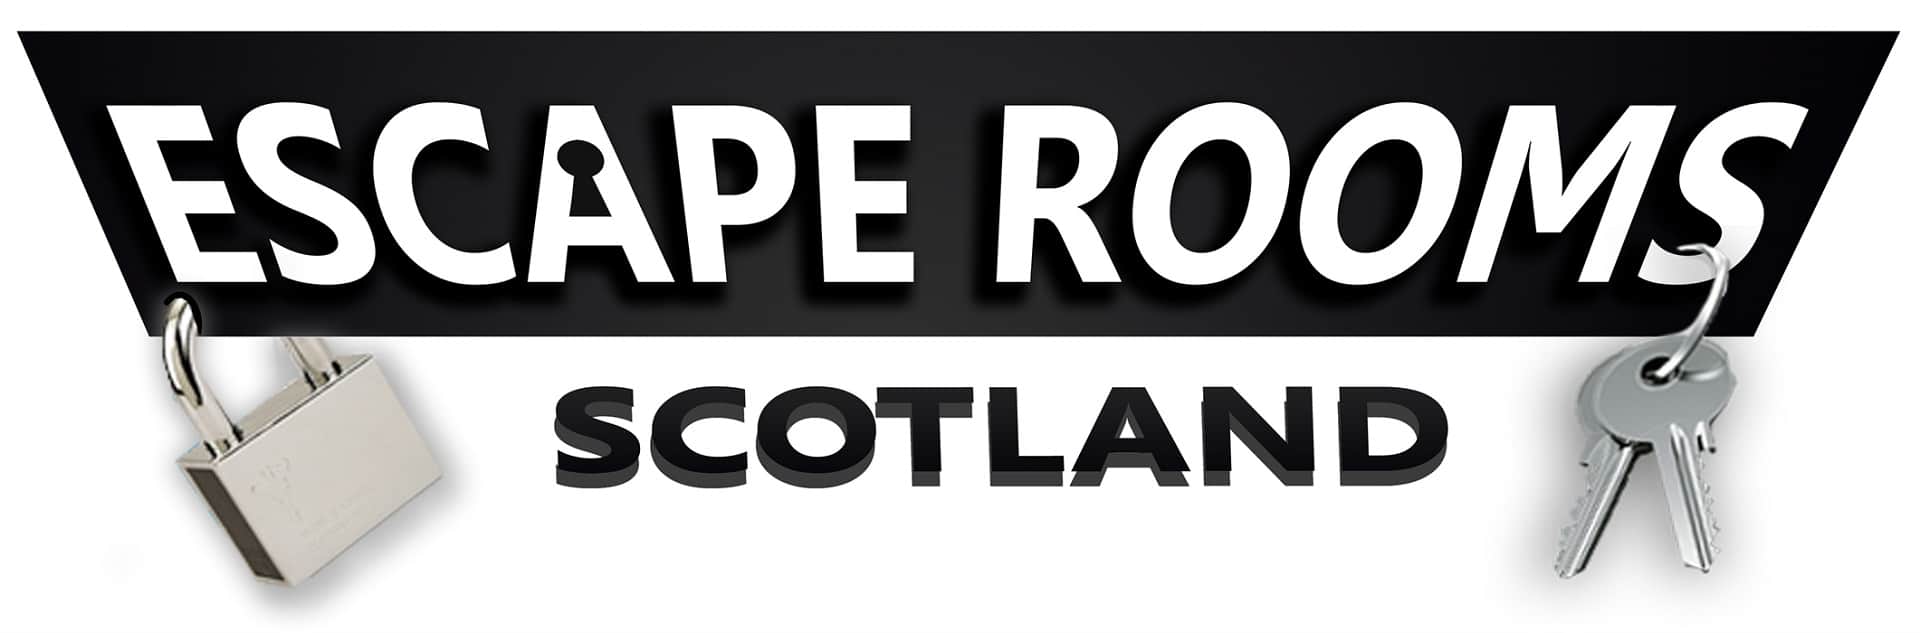 Escape Rooms Scotland - Glasgow in UK